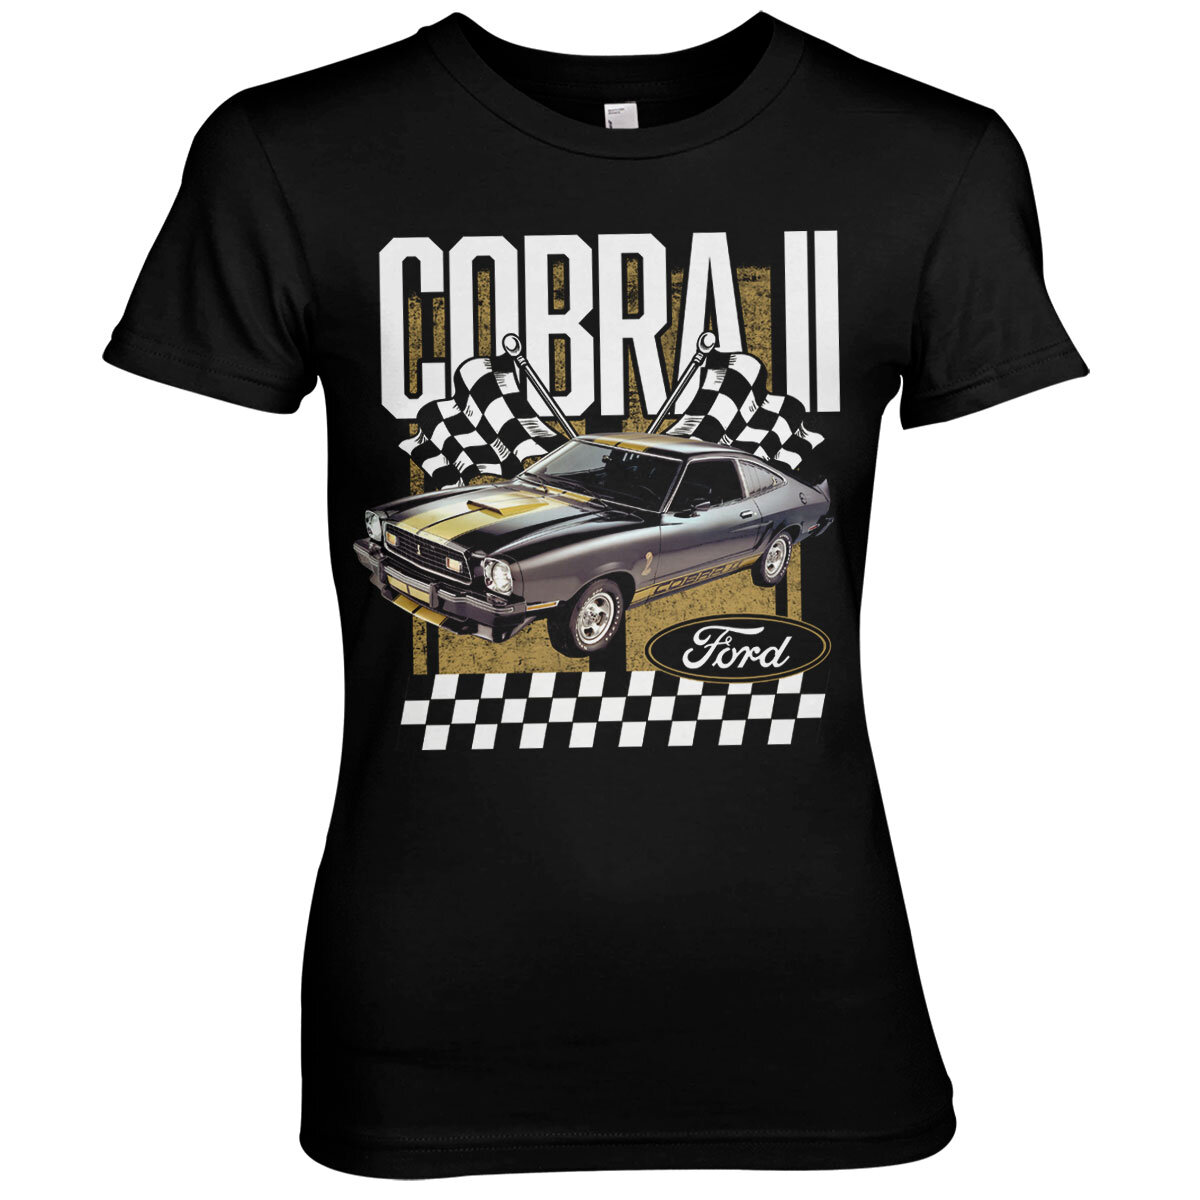 Ford Cobra II Girly Tee